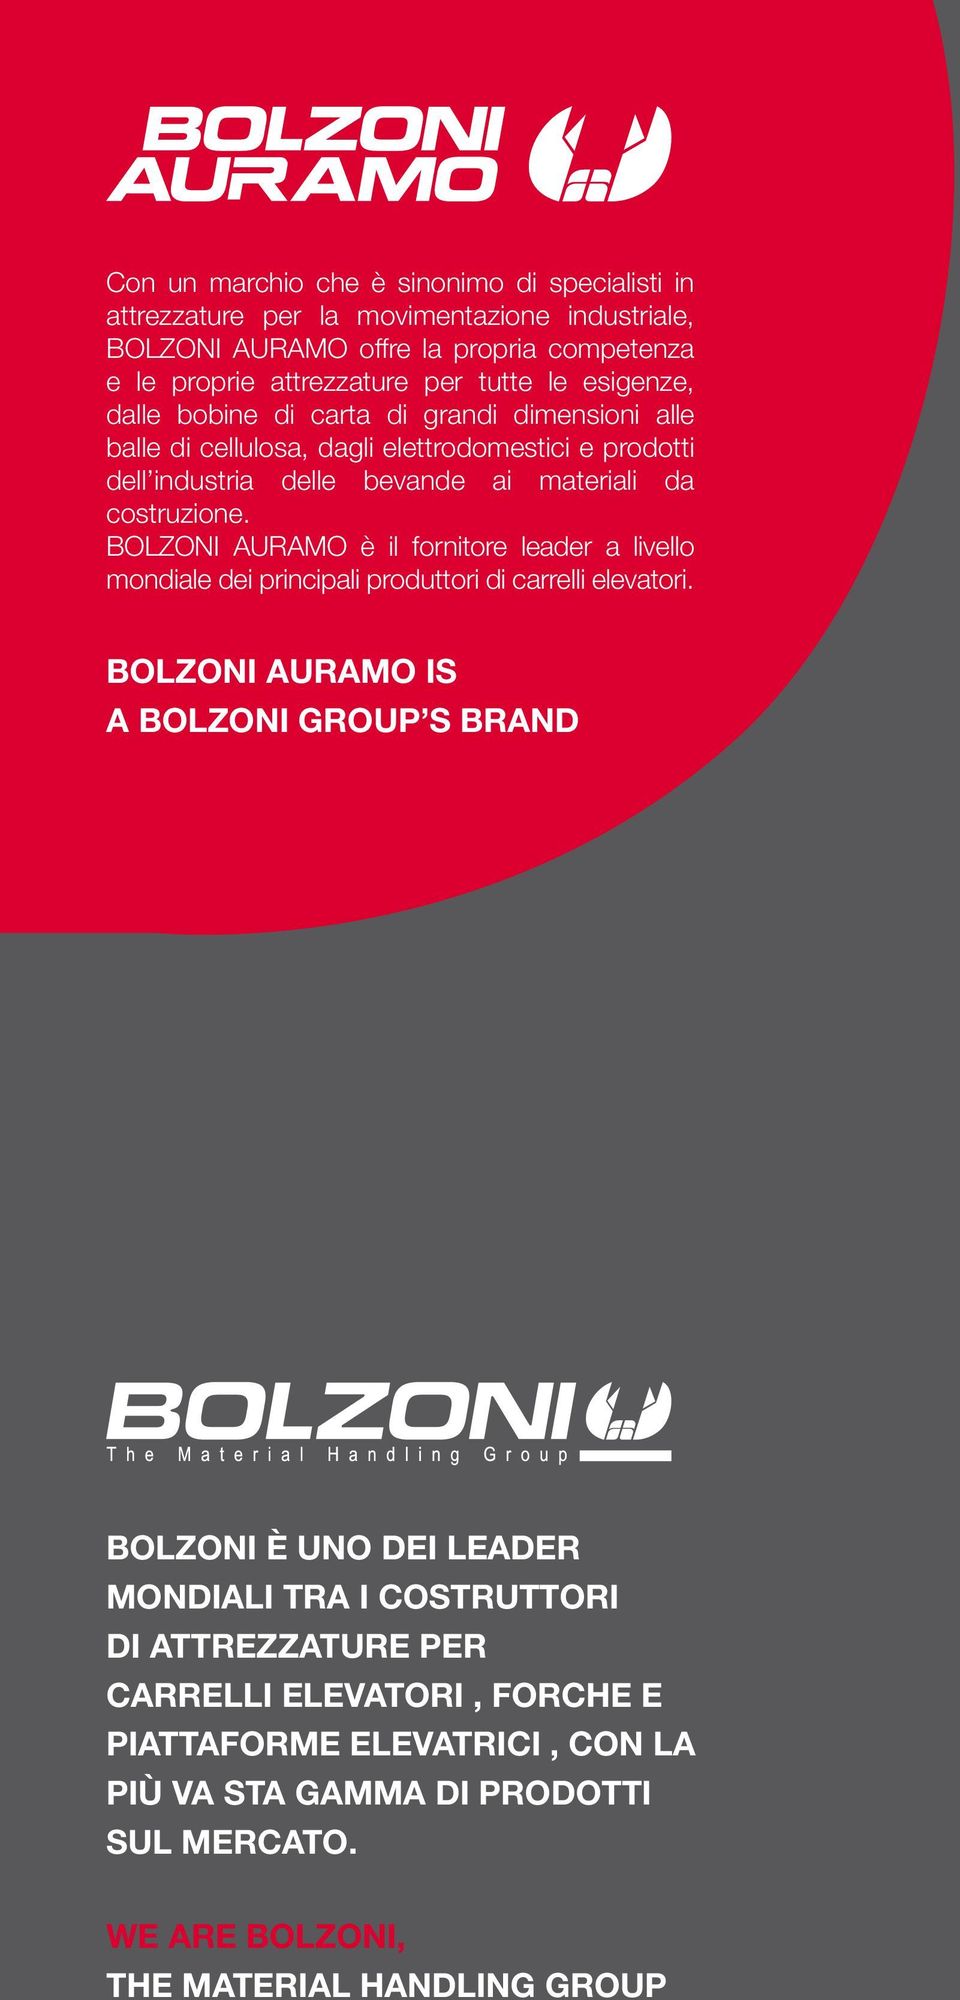 BOLZONI AURAMO è il fornitore leader a livello mondiale dei principali produttori di carrelli elevatori.